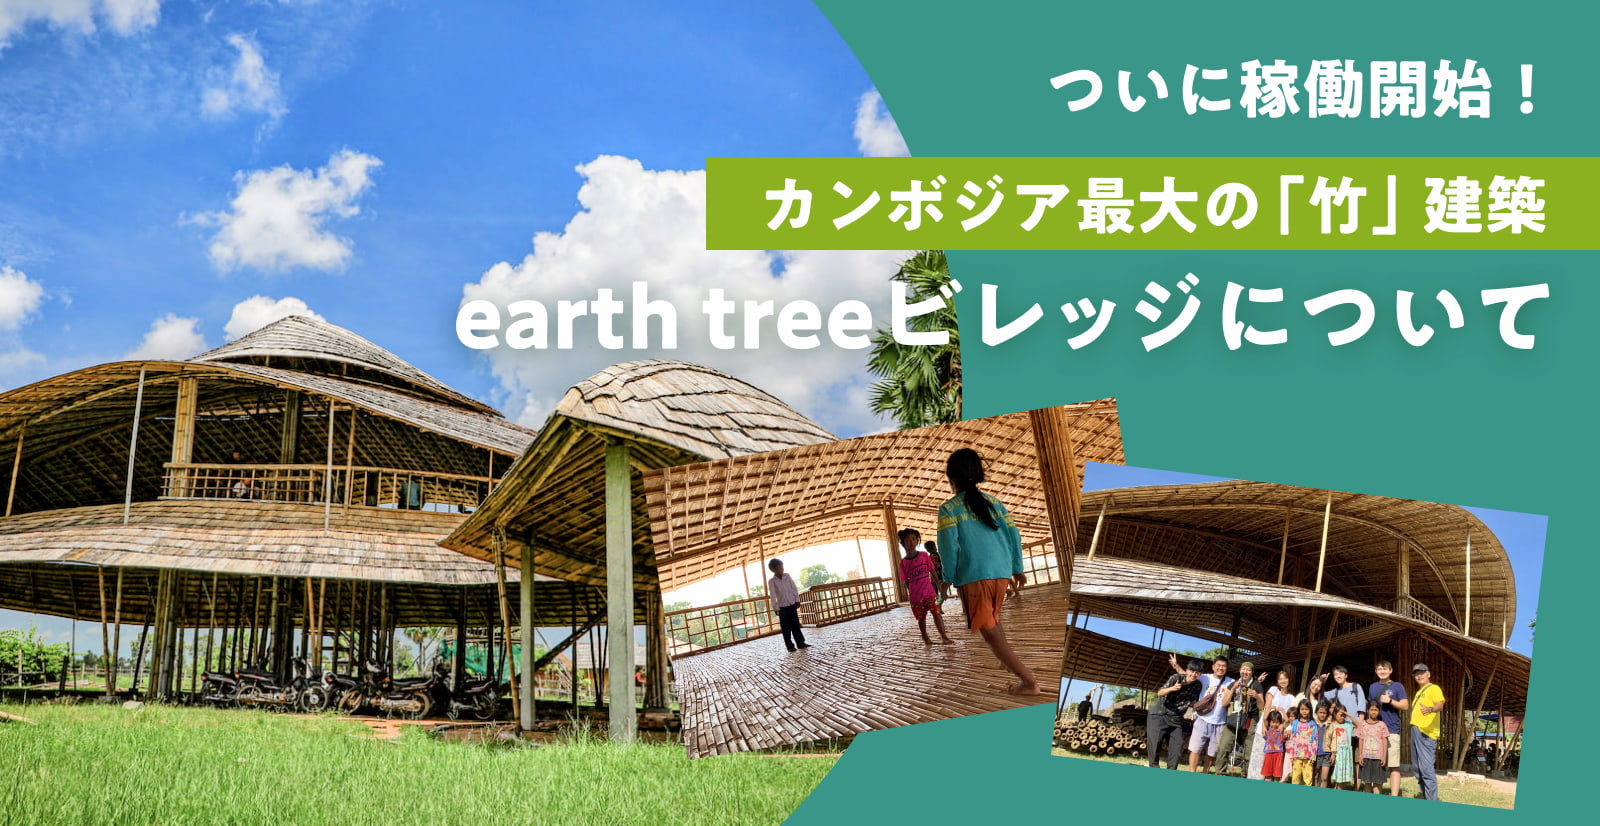 竹でできた複合施設「earth treeビレッジ」